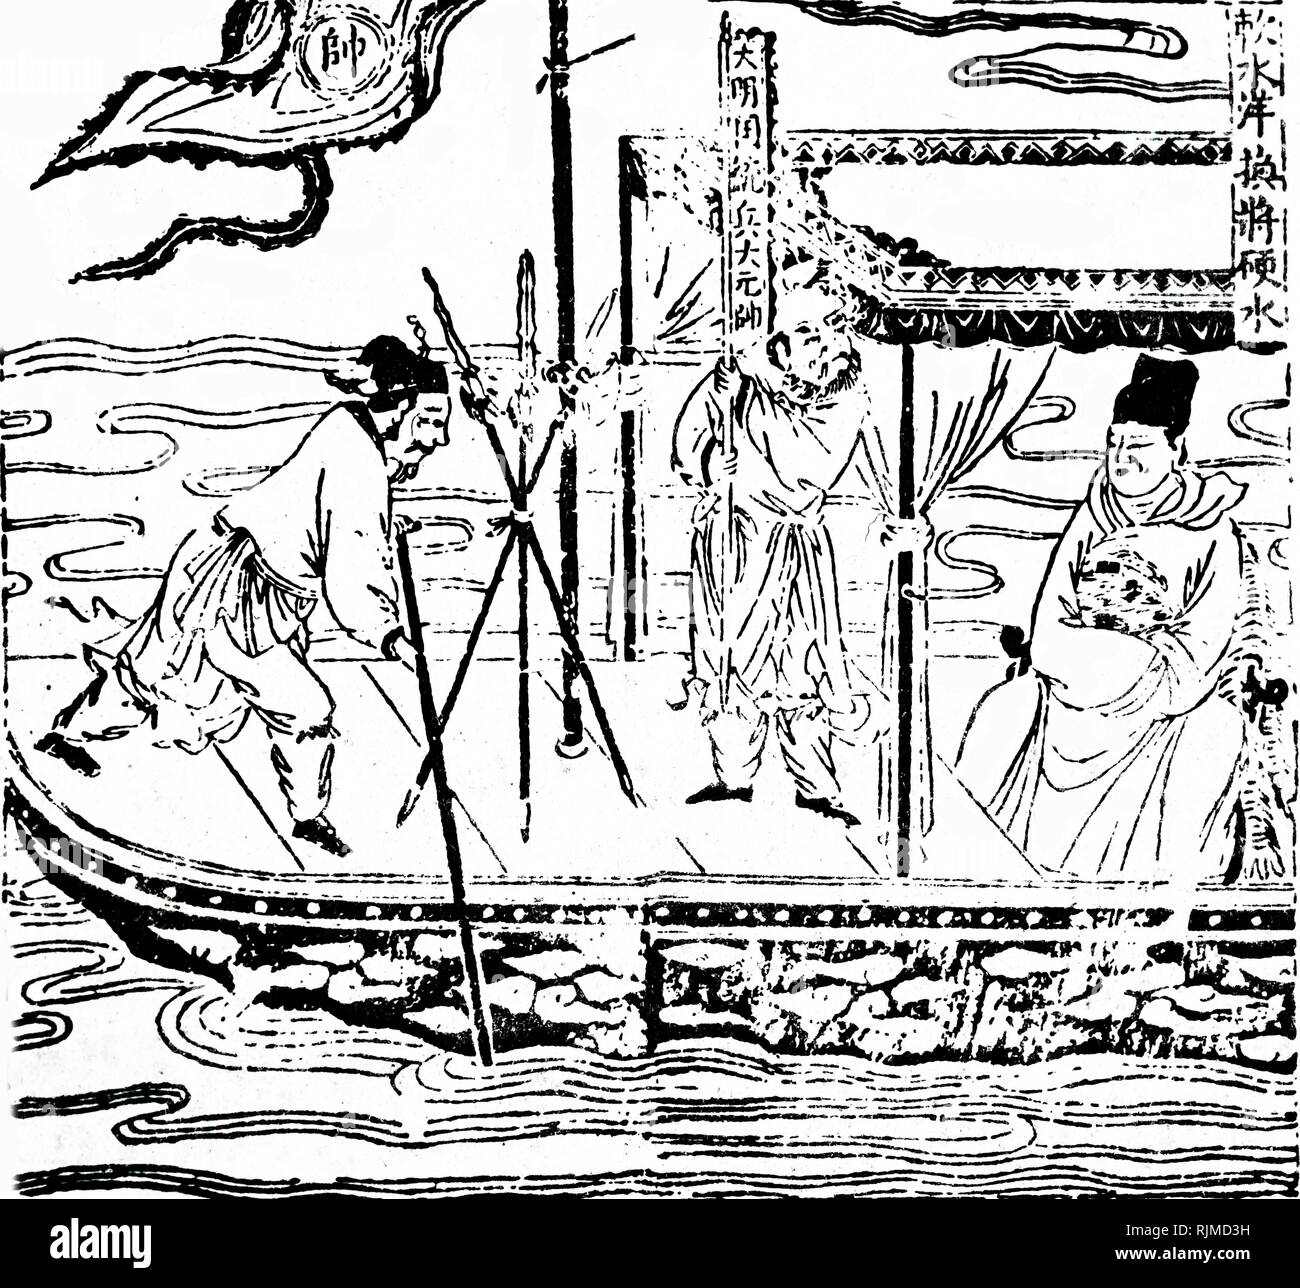 Illustration de Zheng He, le grand navigateur chinois au début du xve siècle à bord d'un navire. En 1405, il a commencé une série de longs voyages au cours de laquelle il a visité 31 pays. Chine ancienne gravure sur bois Banque D'Images